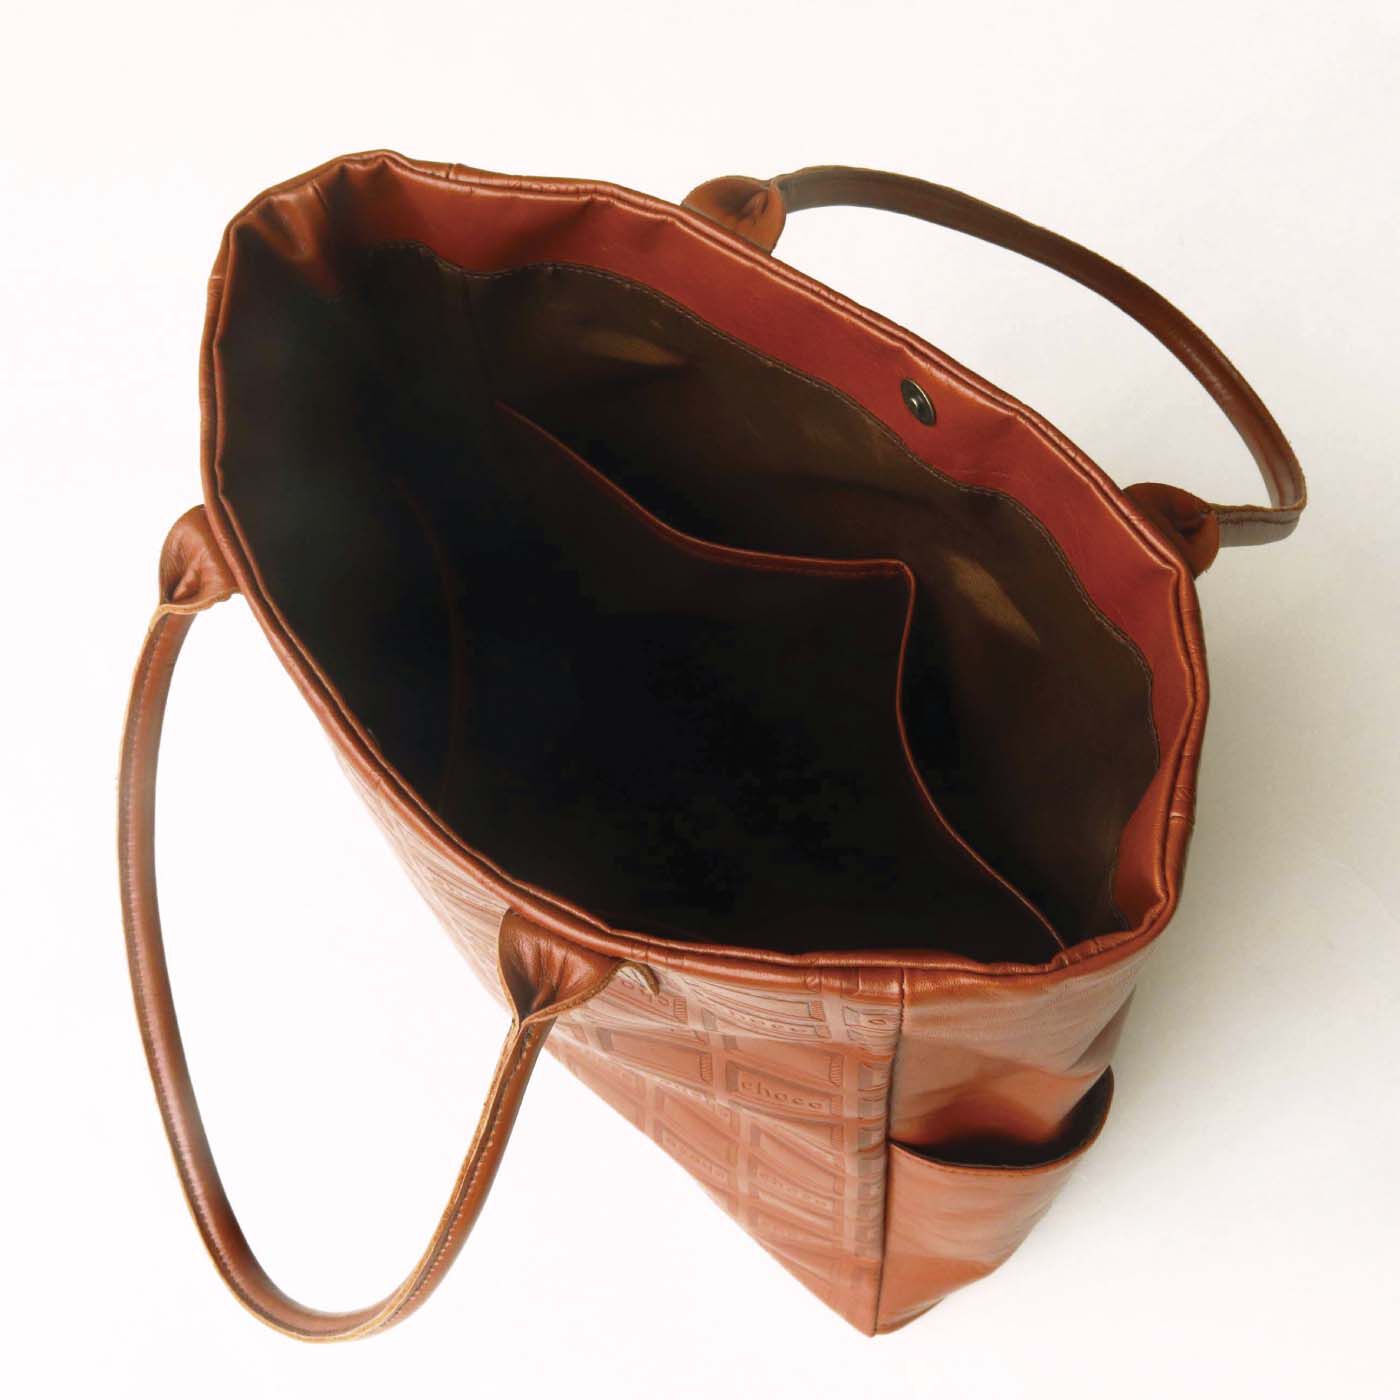 ＆Stories|チョコレートバイヤーと作った　職人本革のトートバッグ〈ブラウン〉|内側には5つの大きいポケットがるので、鞄の中味が整理整頓しやすいが最大の魅力。